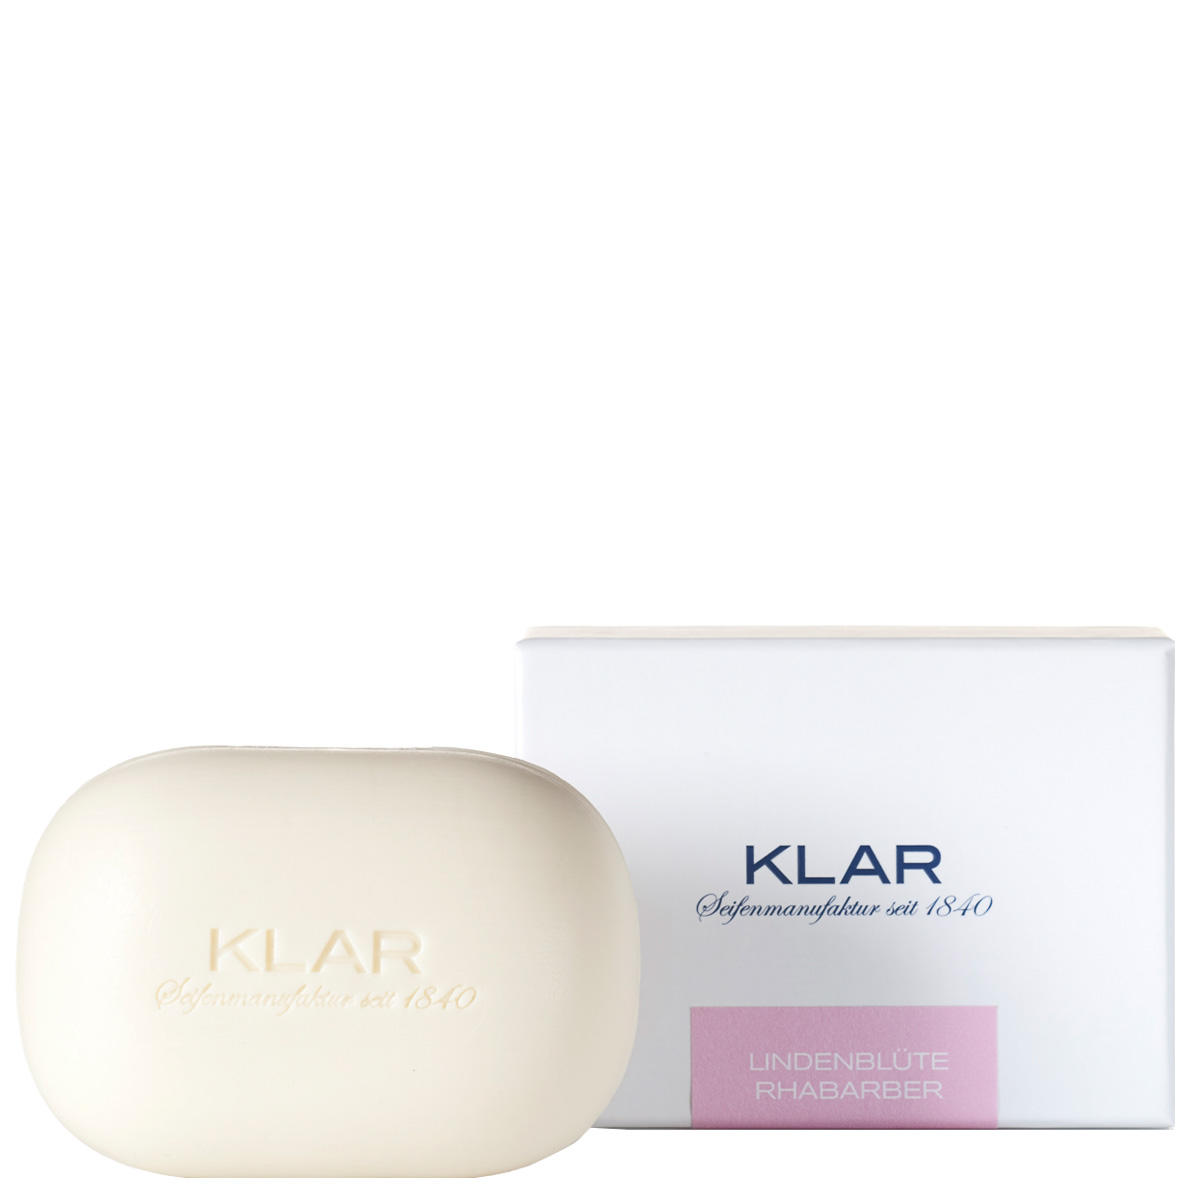 KLAR Lime Blossom & Rhubarb Soap 135 g - 2